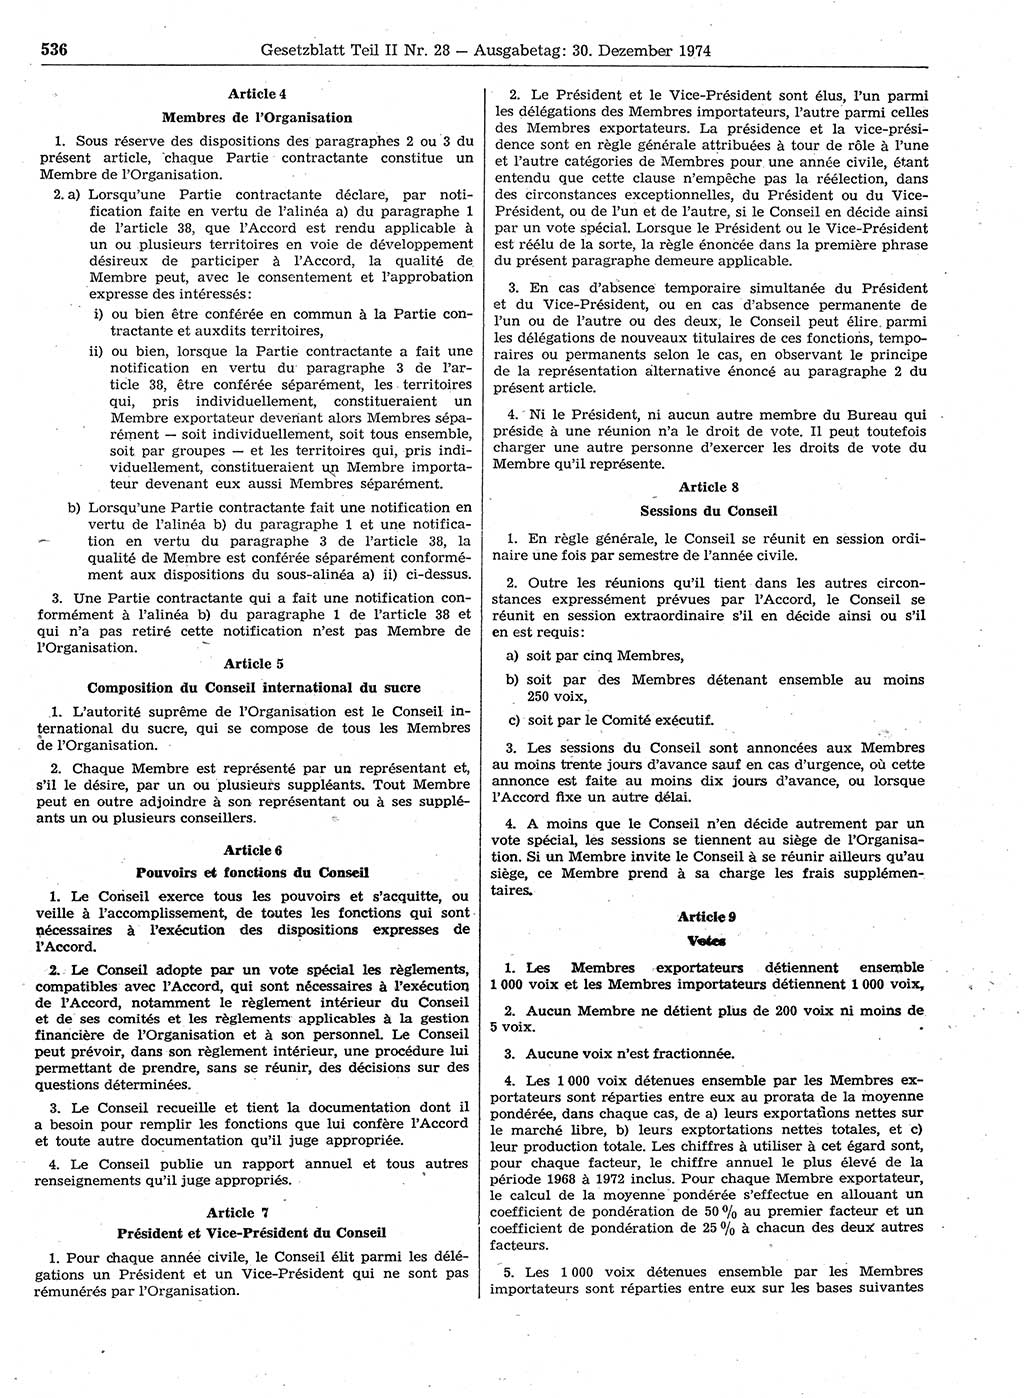 Gesetzblatt (GBl.) der Deutschen Demokratischen Republik (DDR) Teil ⅠⅠ 1974, Seite 536 (GBl. DDR ⅠⅠ 1974, S. 536)